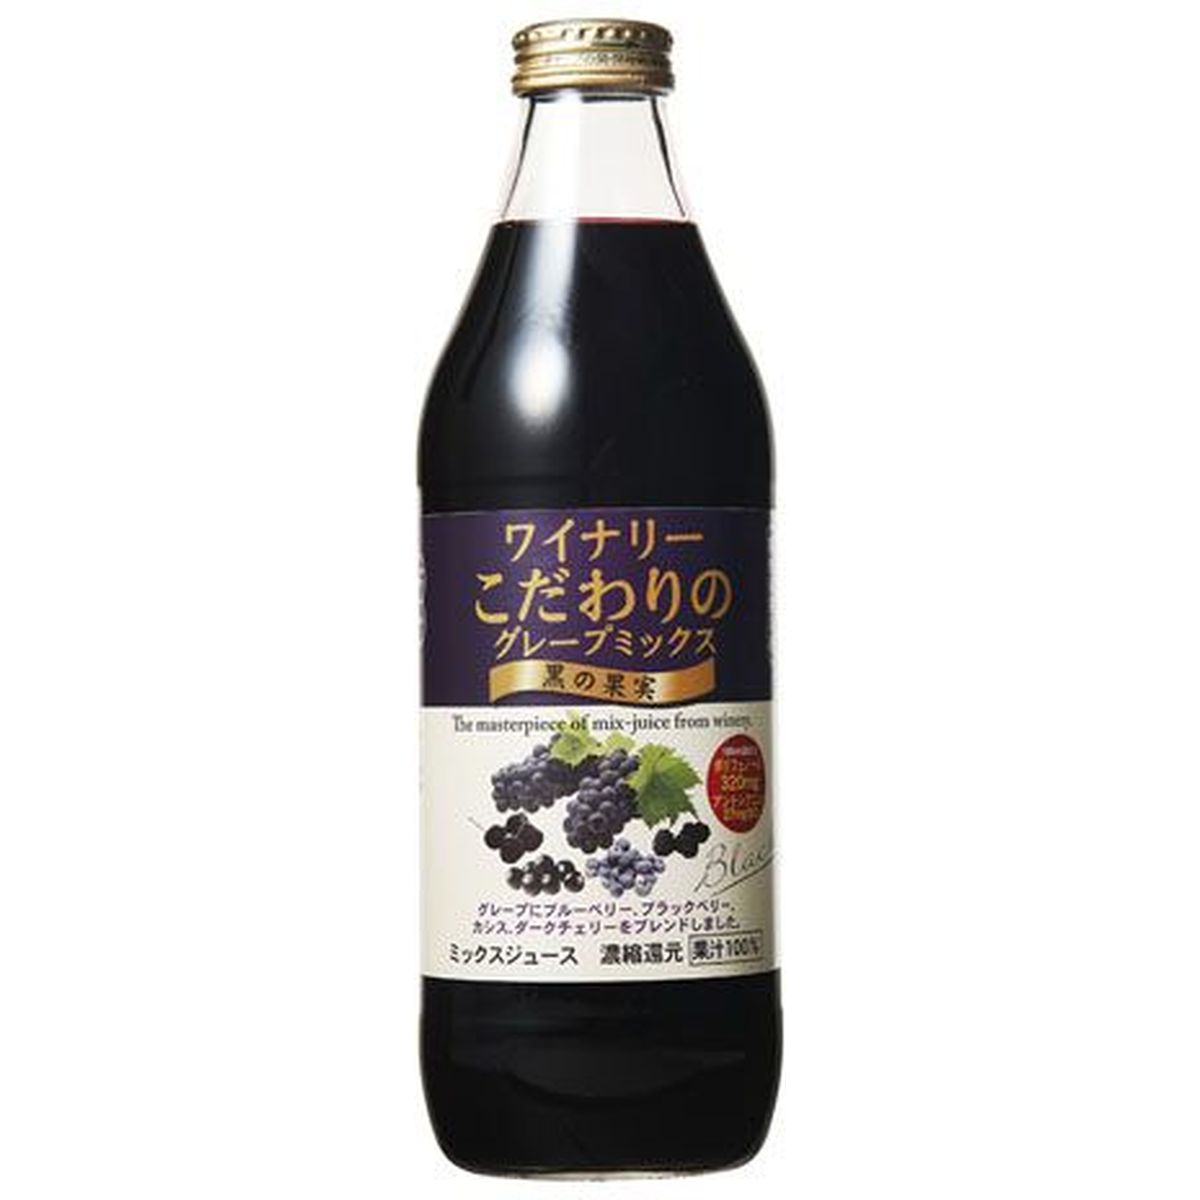 【6個入リ】アルプス グレープミックス 黒ノ果実 瓶 1L